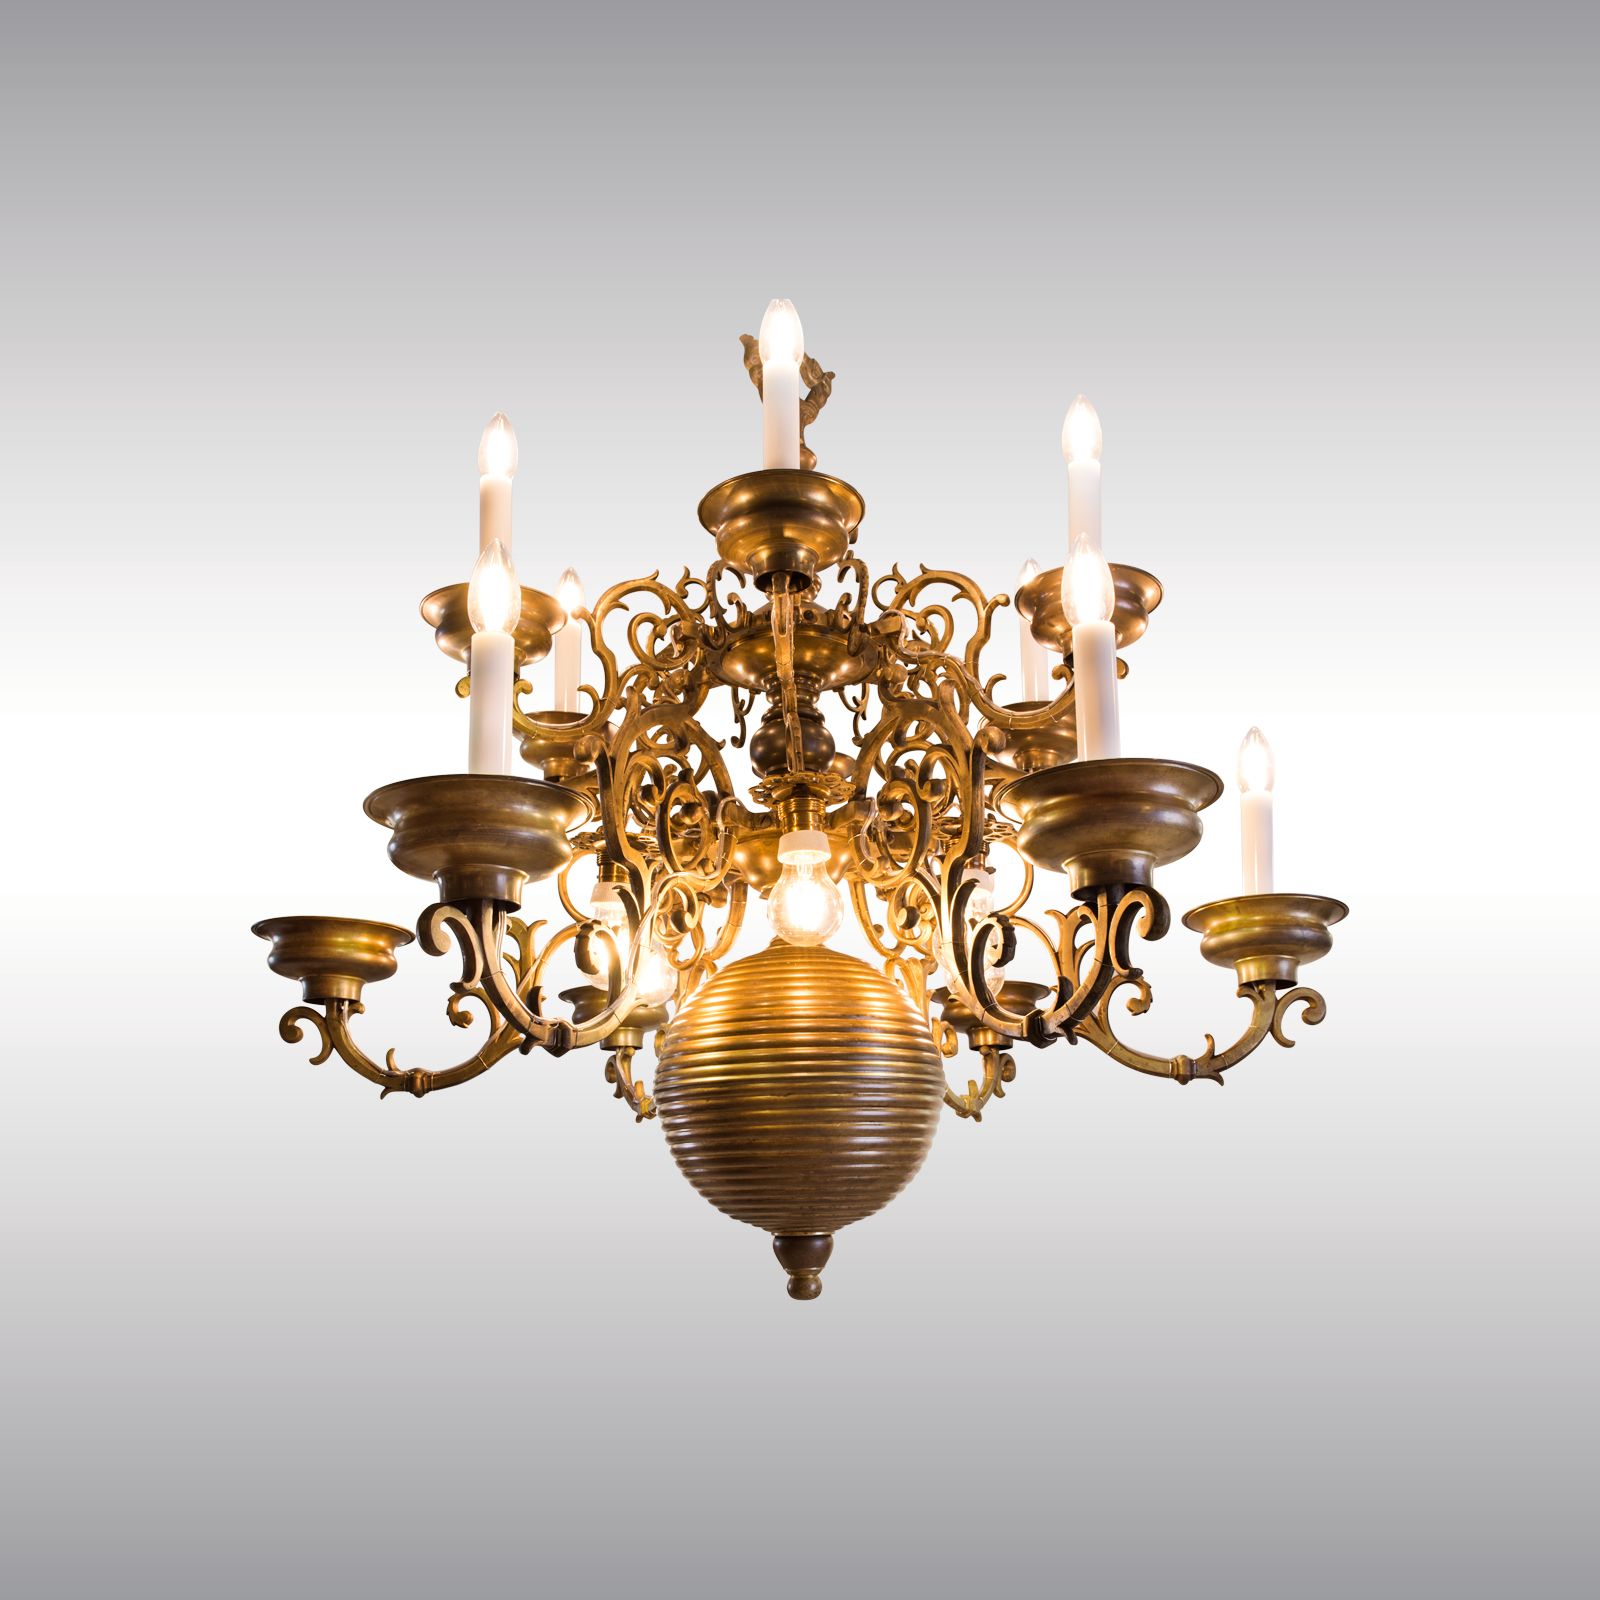 WOKA LAMPS VIENNA - OrderNr.: 80060|Flämischer Barockluster spätes 19. Jhdt - Design: The Ringstrasse-Style in Vienna